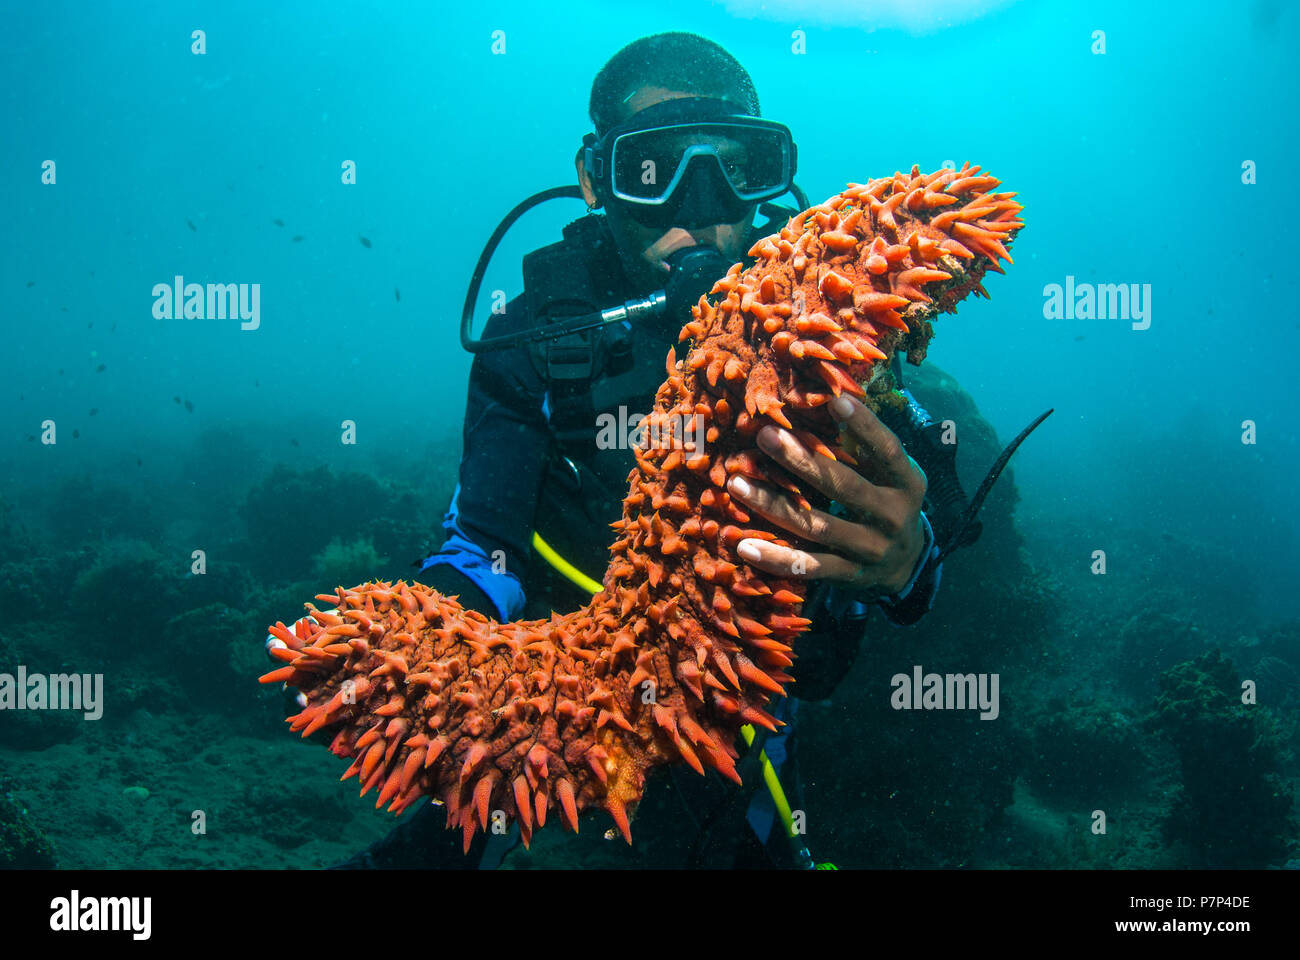 Scuba diver holding up a sea cucumber (Holothuroidea) [MR] Stock Photo